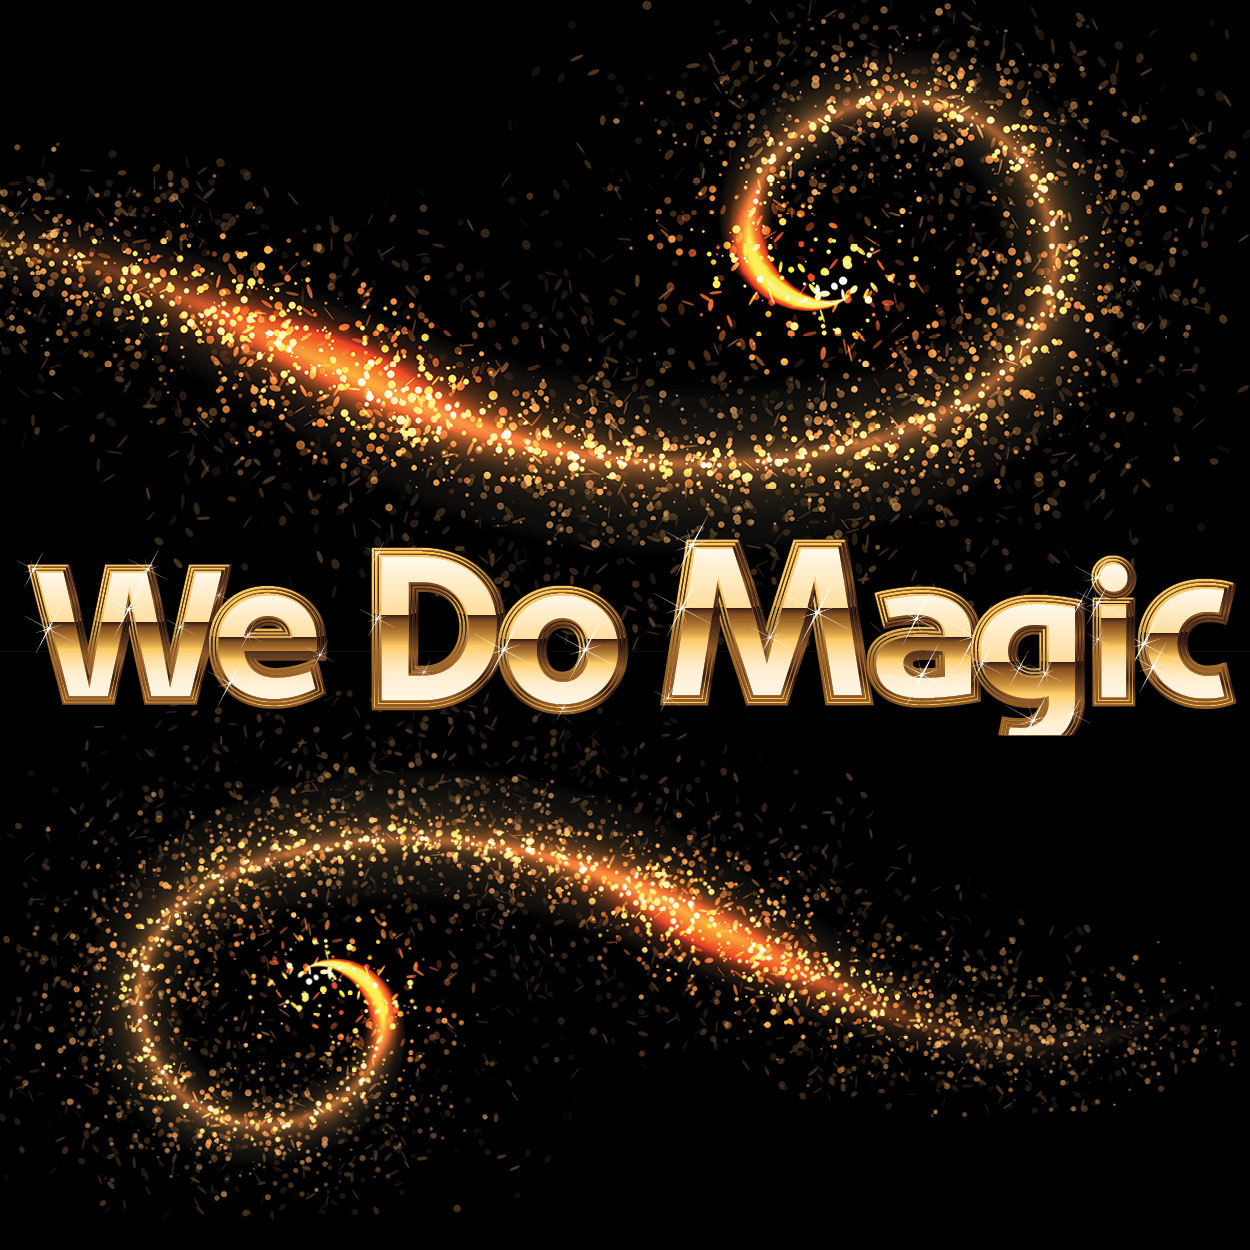 We Do Magic Community Service Awards